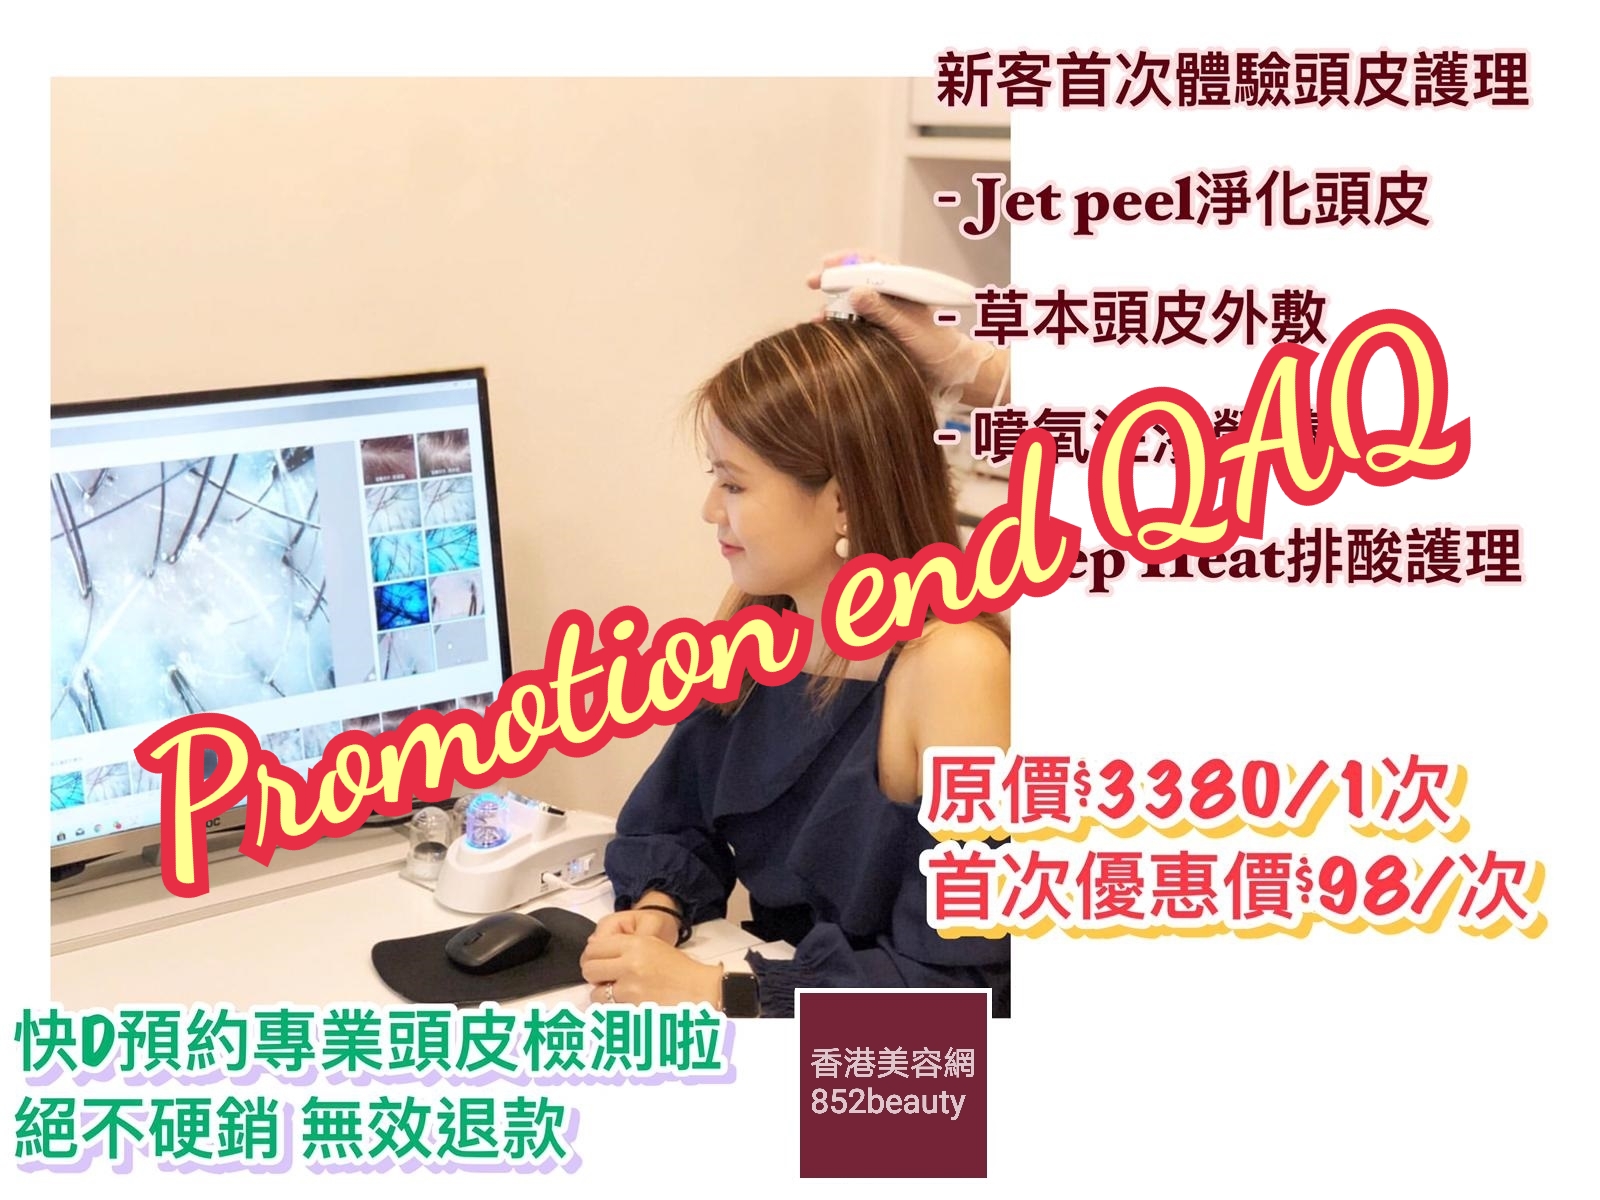 香港美容網 Hong Kong Beauty Salon 最新美容優惠: 美容優惠 - 尖沙咀區] 正視頭皮健康 $98大優惠套裝 (已結束)